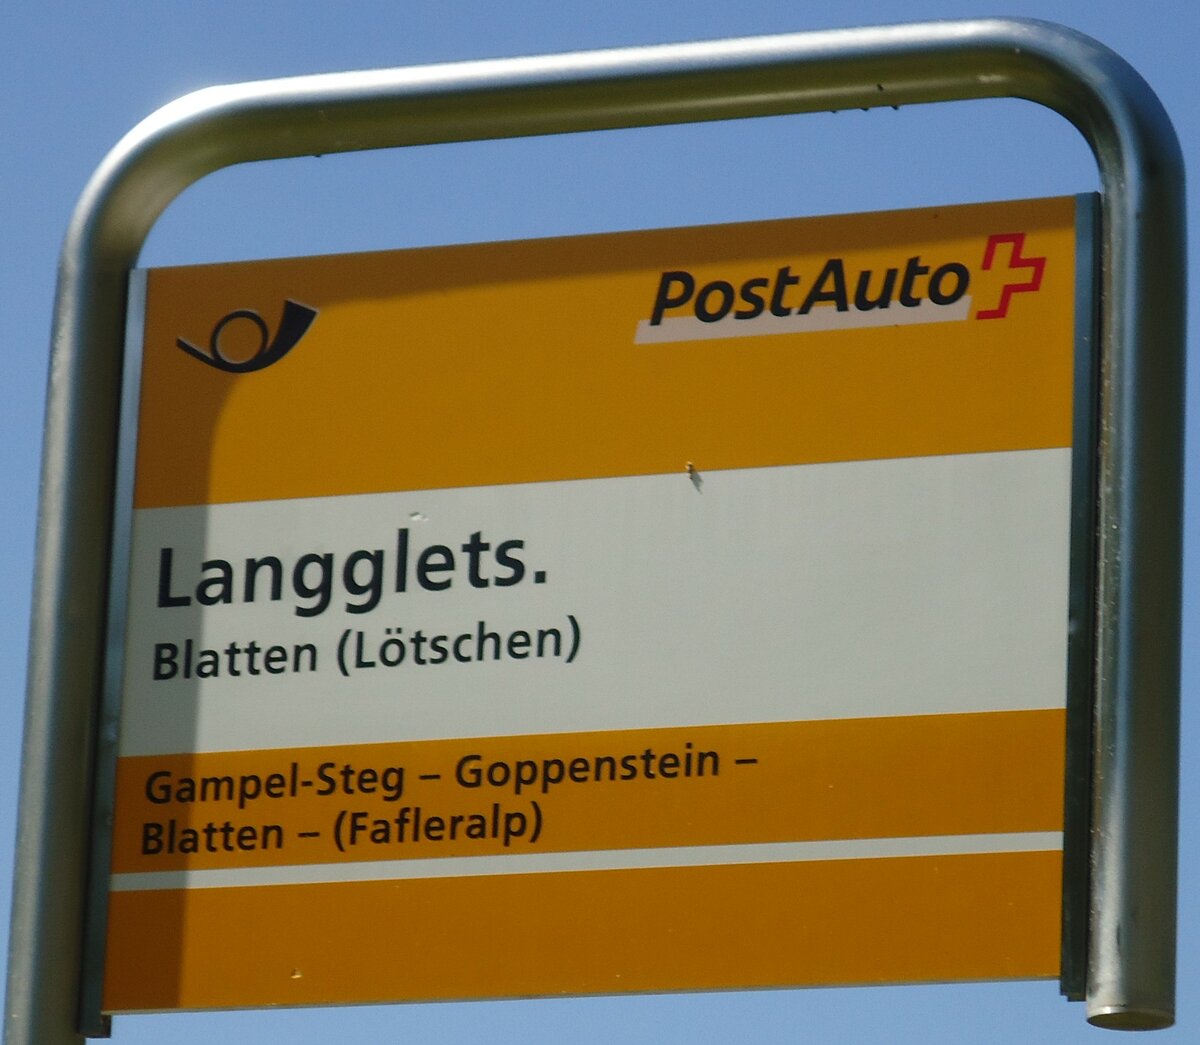 (146'238) - PostAuto-Haltestellenschild - Blatten (Ltschen), Langglet.- am 5. August 2013